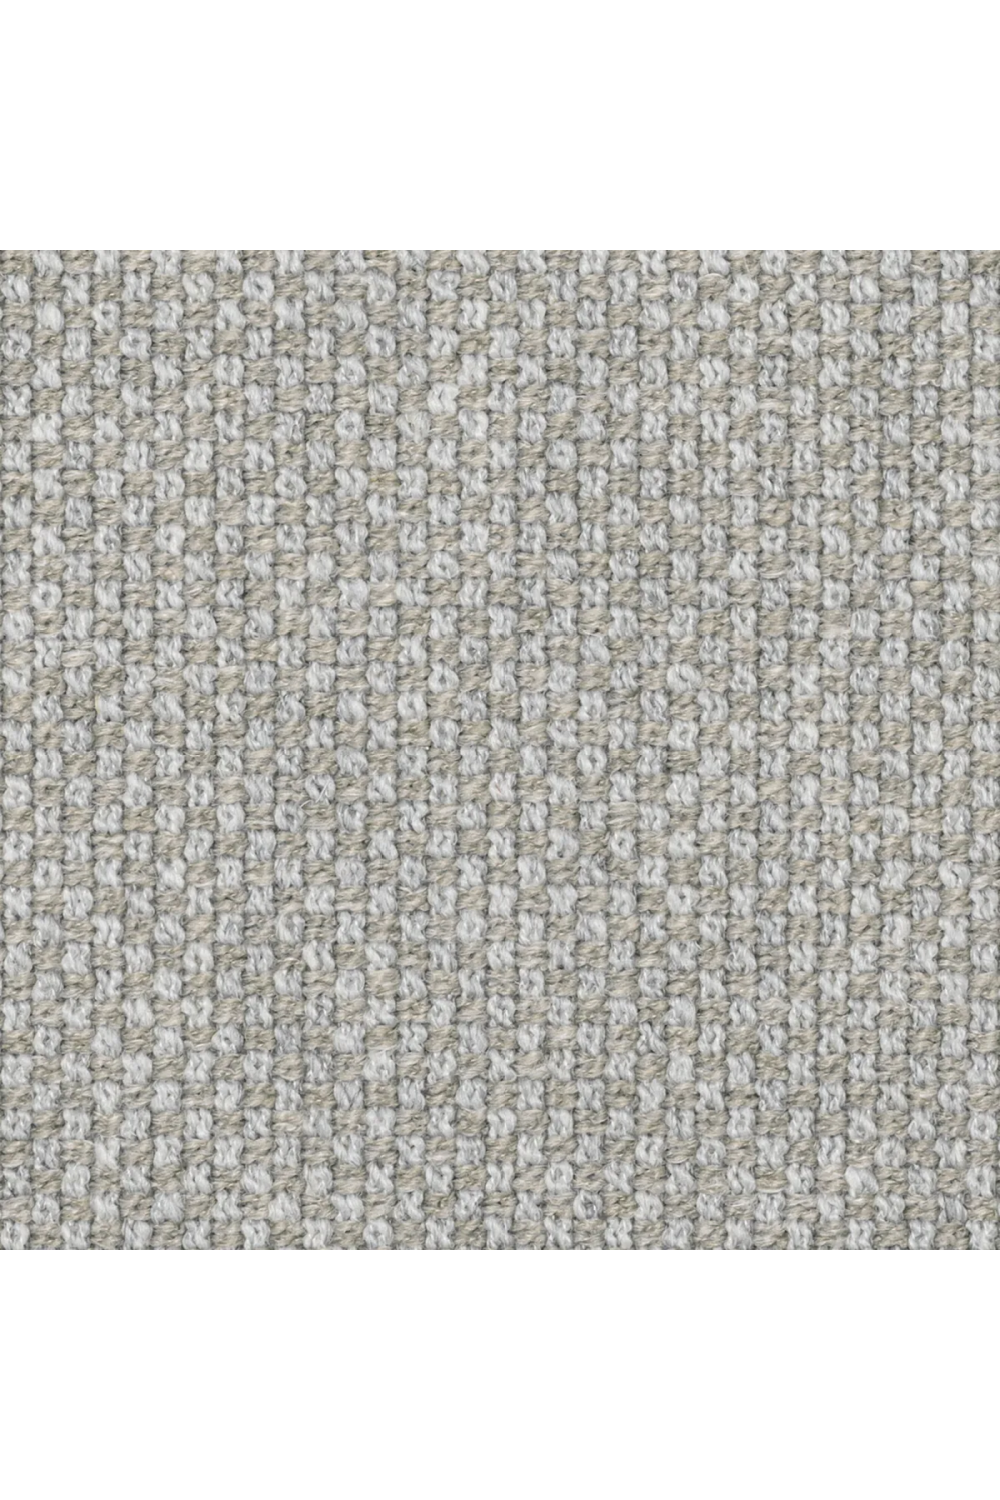 Irregular-Shaped Gray Sofa | Eichholtz Taraval | Oroa.com